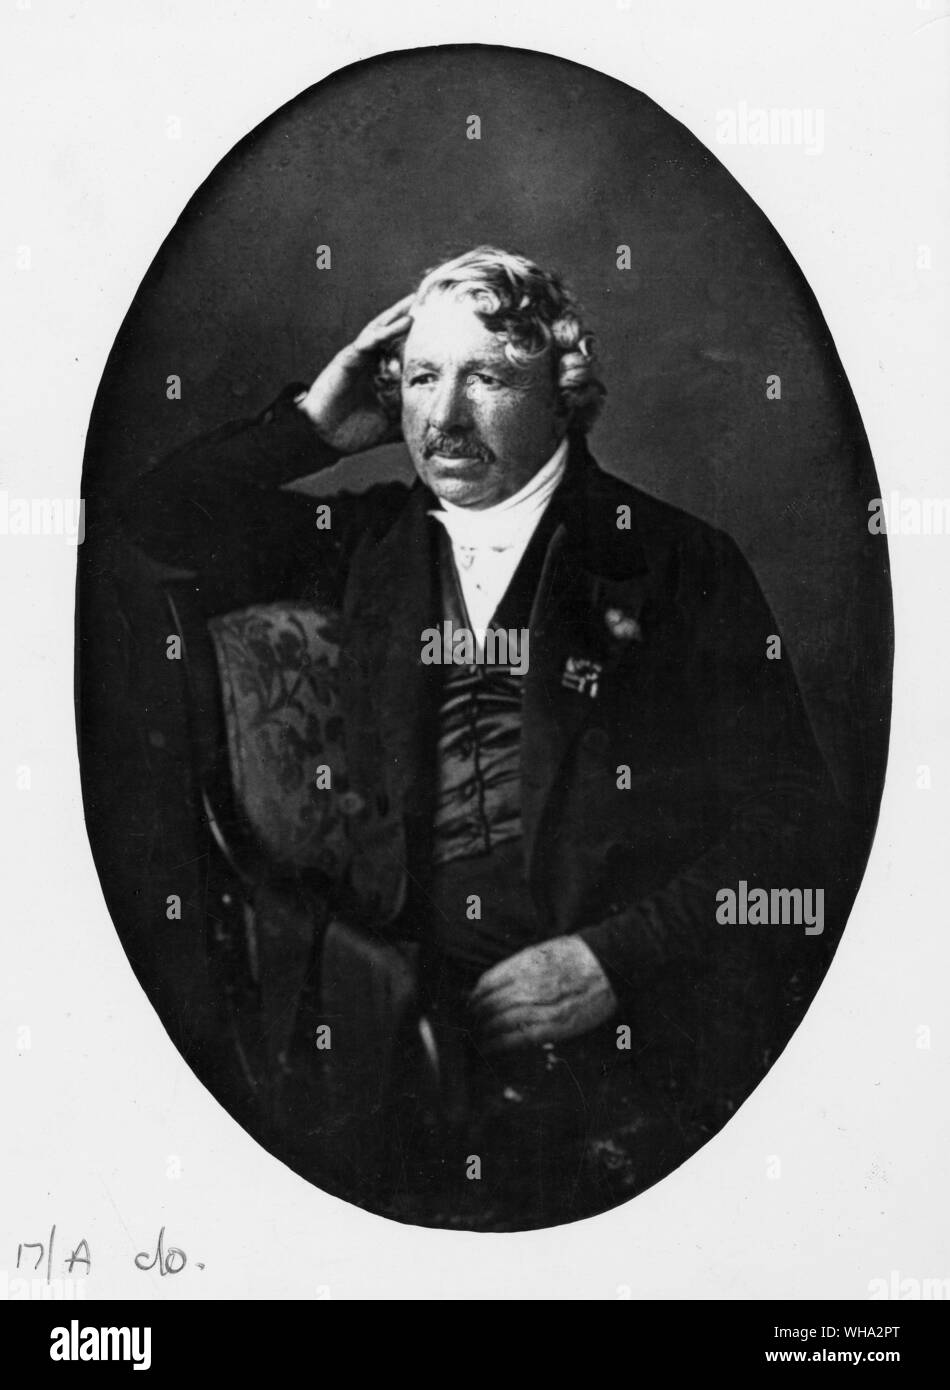 Louis Jacques Mande Daguerre, das französische Theater Maler, die daguerreotypie Verfahren erfunden. Stockfoto